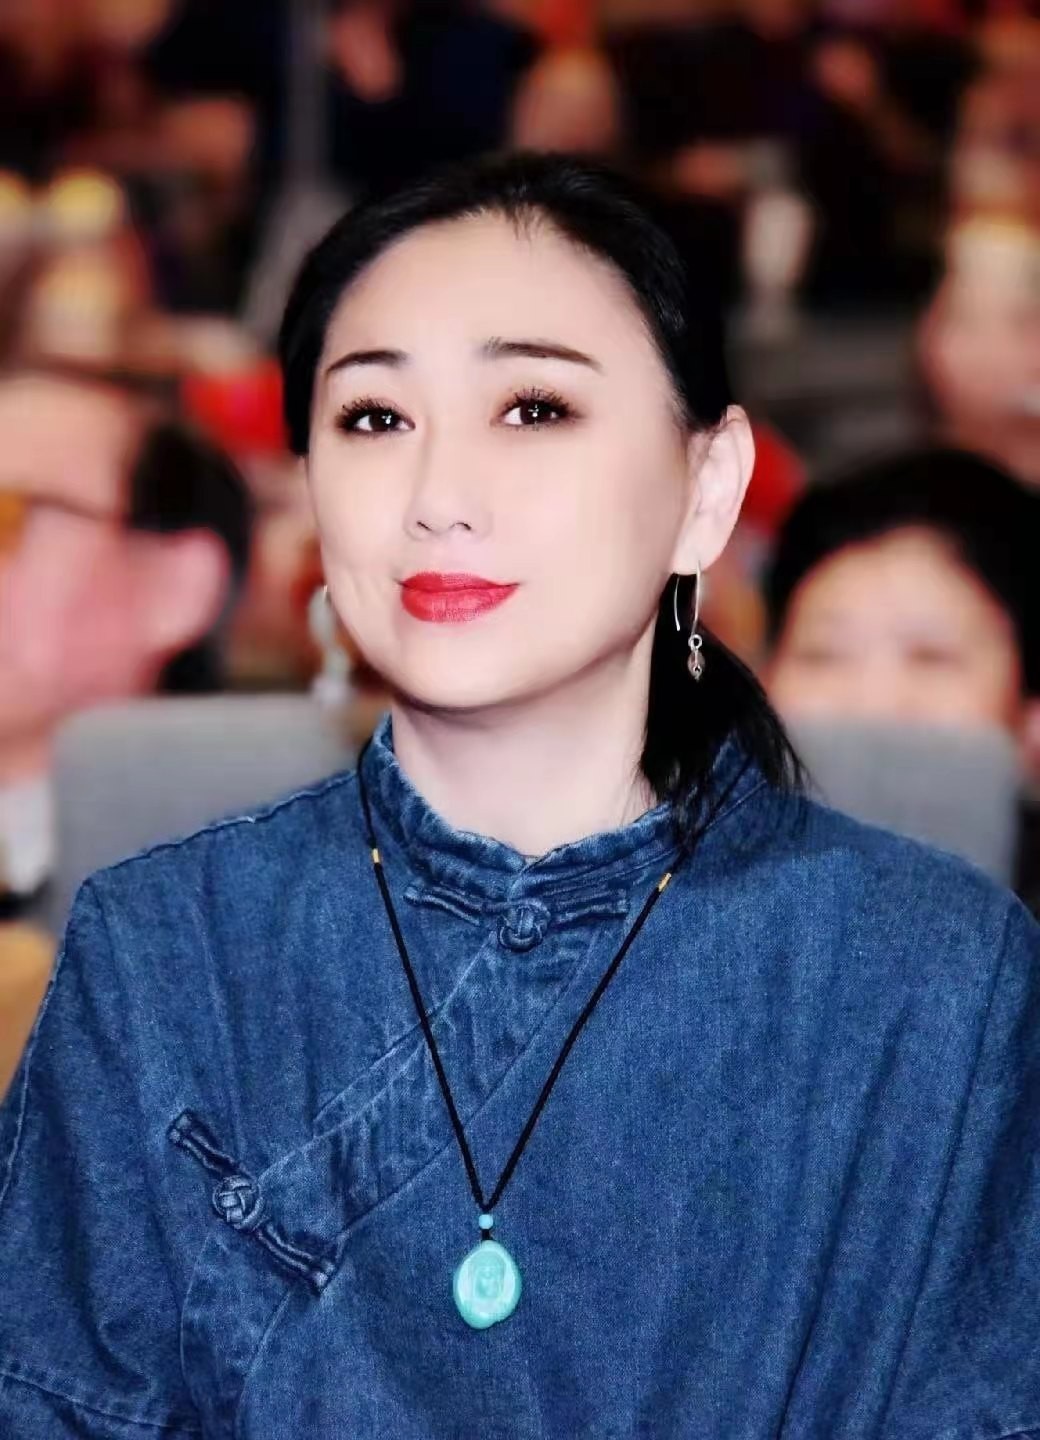 作为新中国舞蹈事业奠基人之一,著名舞蹈表演艺术家陈爱莲的女儿,您是